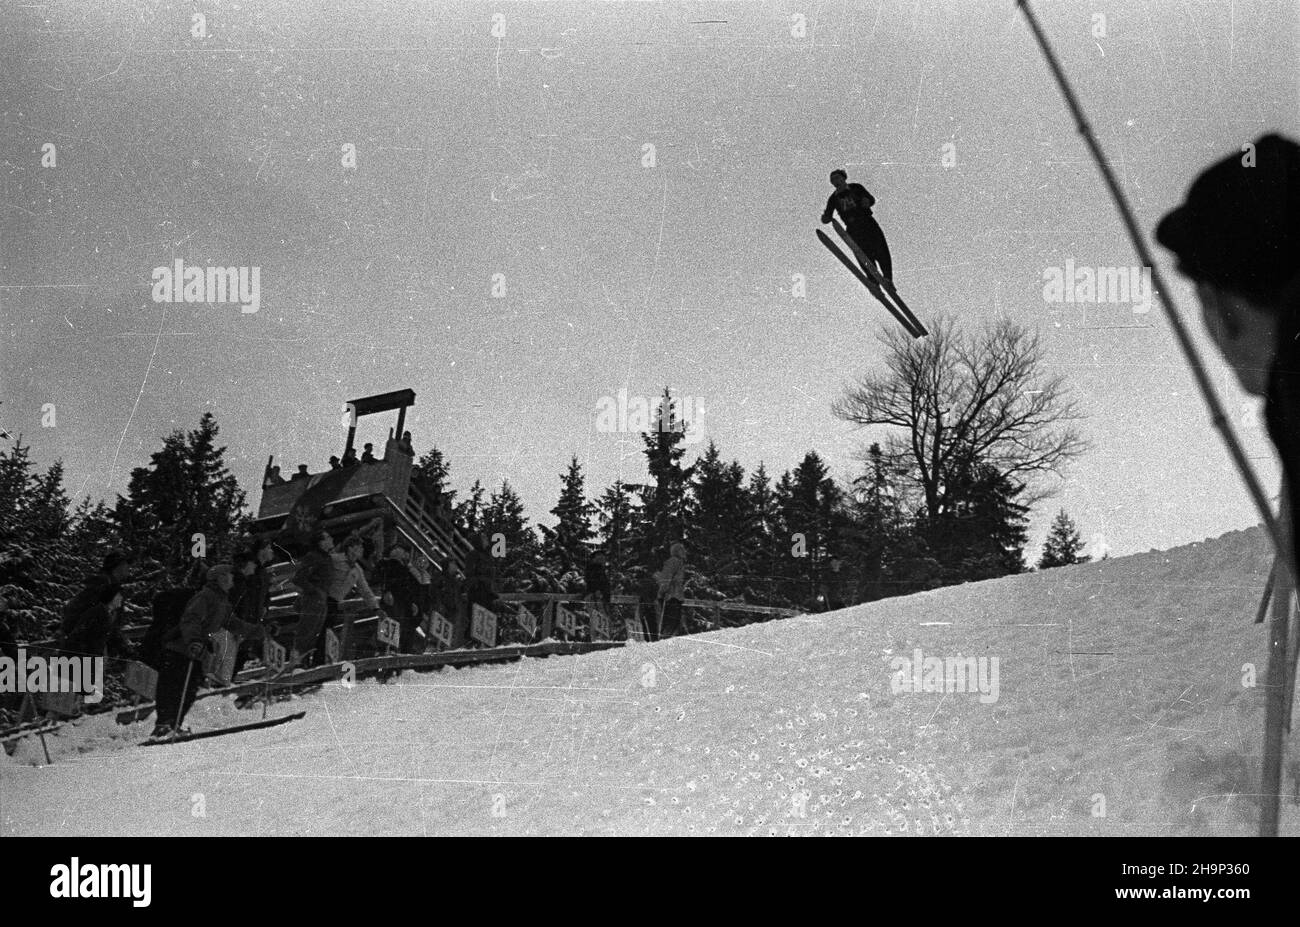 Zakopane, 1949-01-16. Memoria³ im. porucznika Wójcickiego w narciarstwie. Nz. konkurs skoków na Wielkiej Krokwi. Widoczna trybuna sêdziowska. bk  PAP      Zakopane, Jan. 16, 1949. The Lt. Wojcicki Memorial Ski Event. Pictured: the ski jump competition at the Wielka Krokiew ski jump. In the background the referees' box.  bk  PAP Stock Photo